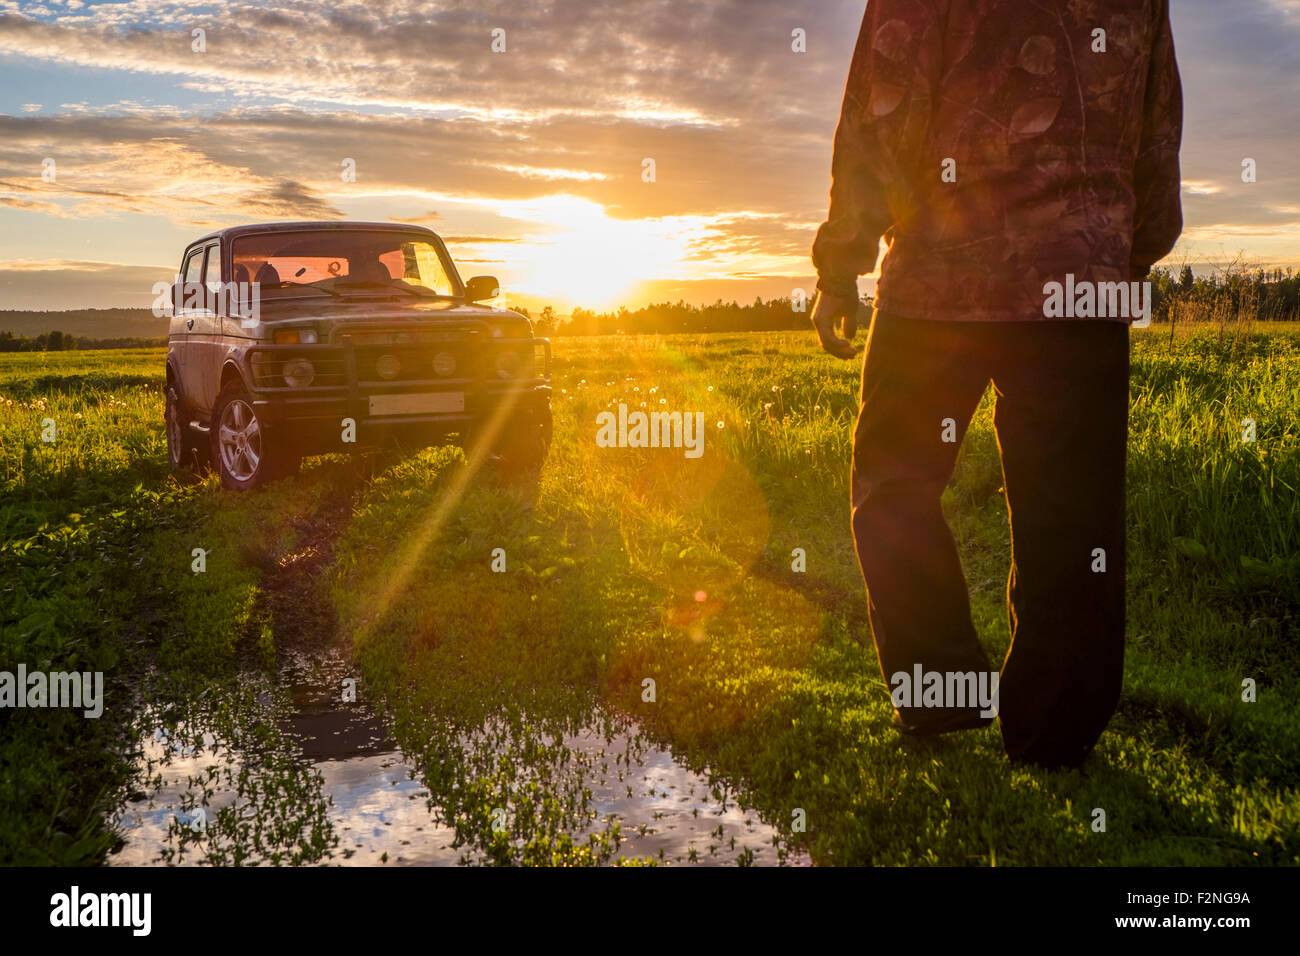 Mari homme à marcher en direction de voiture à Sunset in rural field Banque D'Images